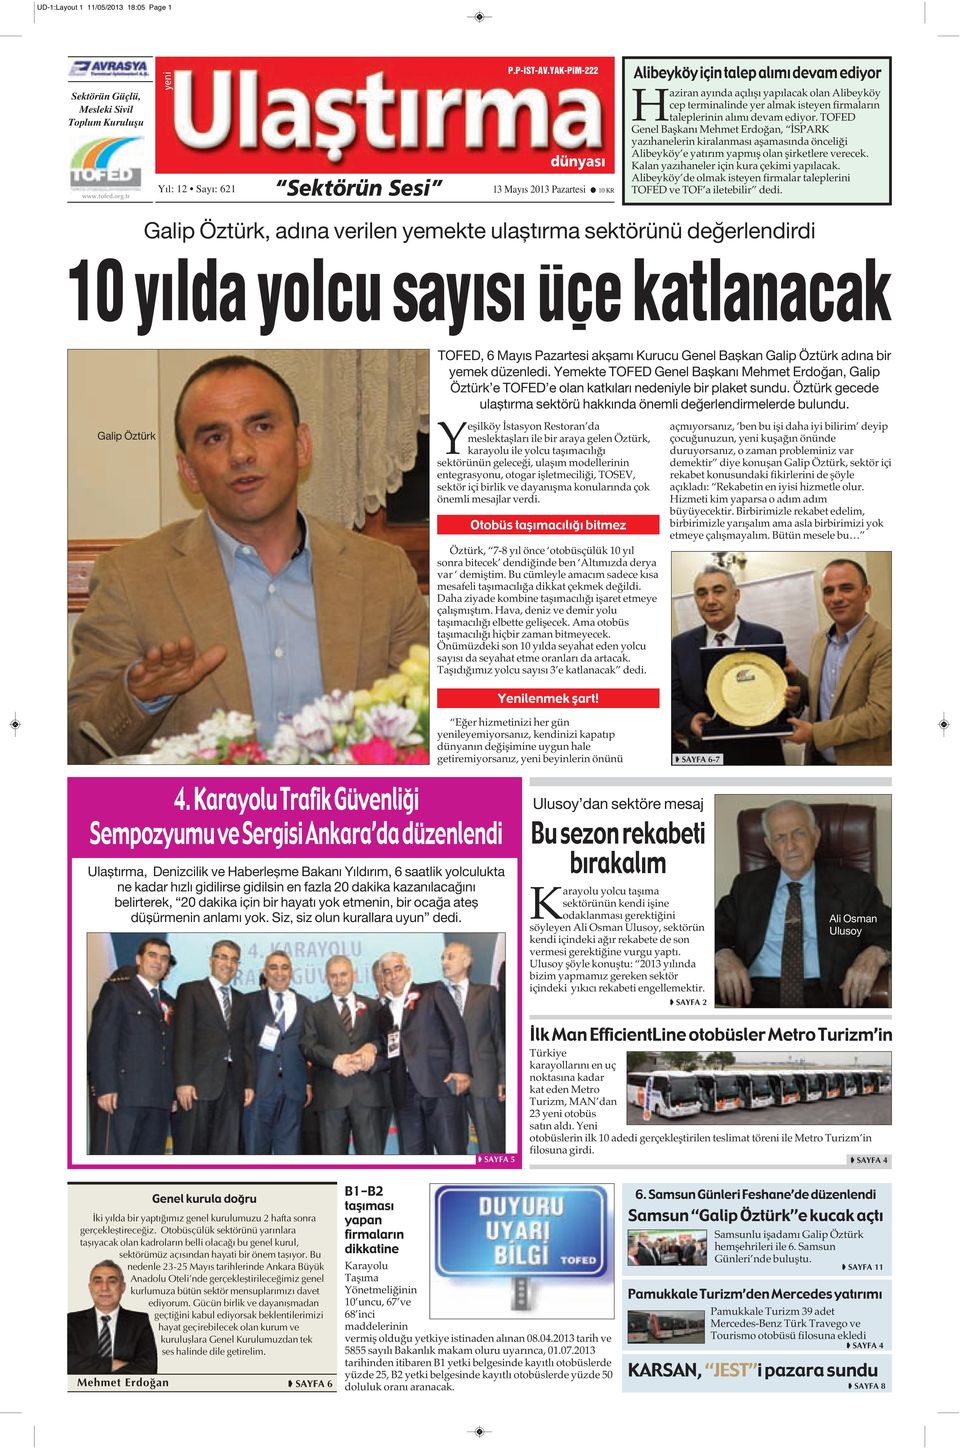 TOFED Genel Başkanı Mehmet Erdoğan, İSPARK yazıhanelerin kiralanması aşamasında önceliği Alibeyköy e yatırım yapmış olan şirketlere verecek. Kalan yazıhaneler için kura çekimi yapılacak.